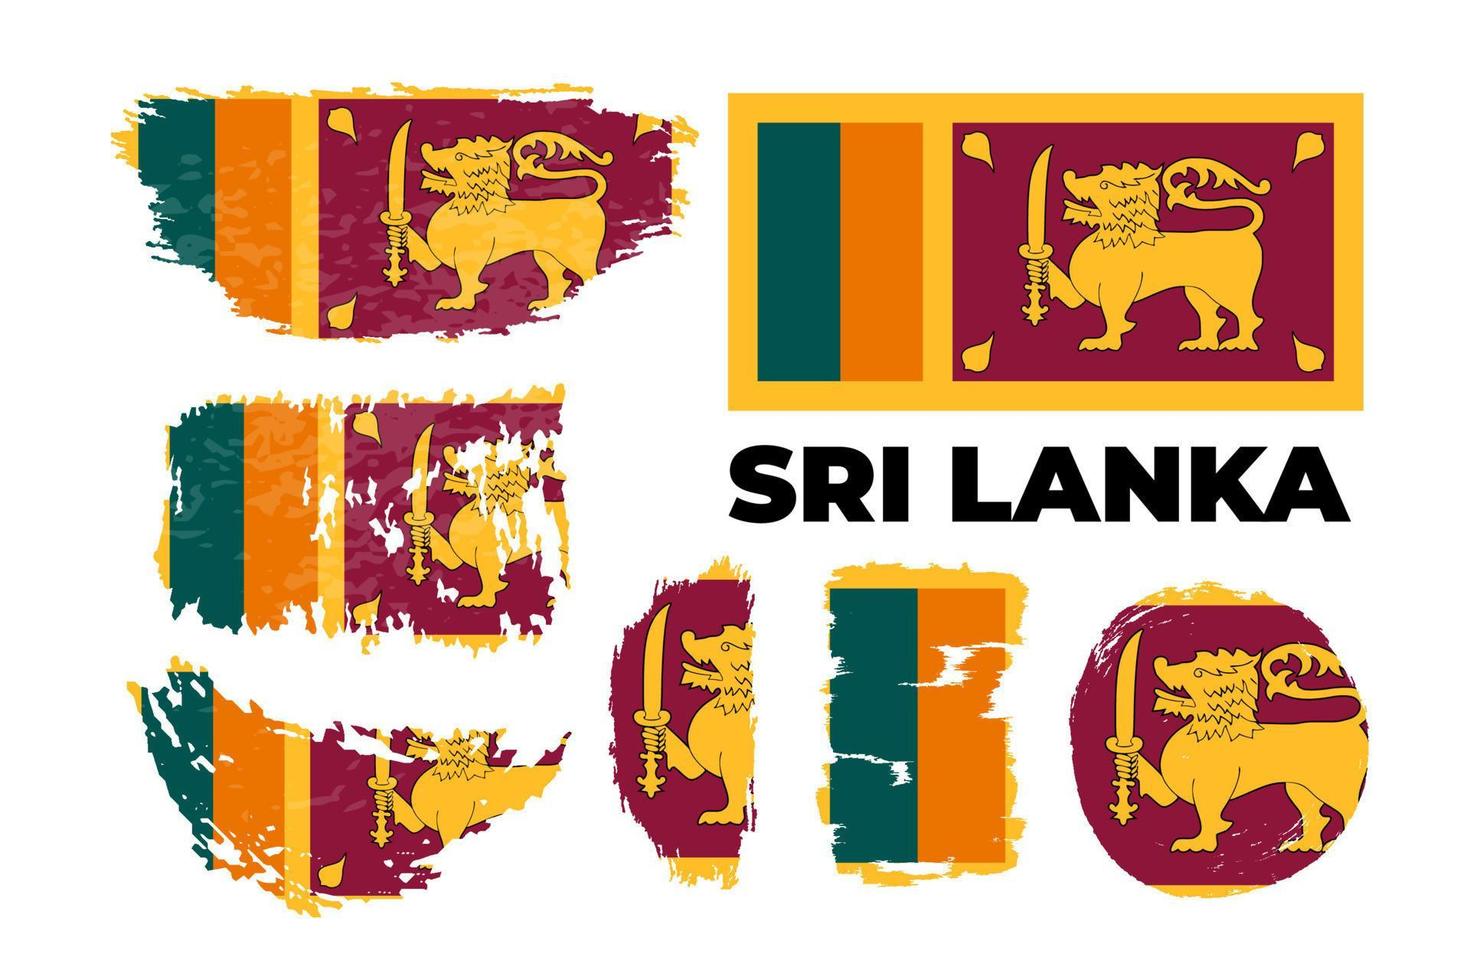 bandera nacional de sri lanka, colores oficiales y proporción correcta. ilustración de stock vectorial en trazo de pincel de estilo grunge. eps10. icono, diseño simple y plano para web o aplicación móvil. vector